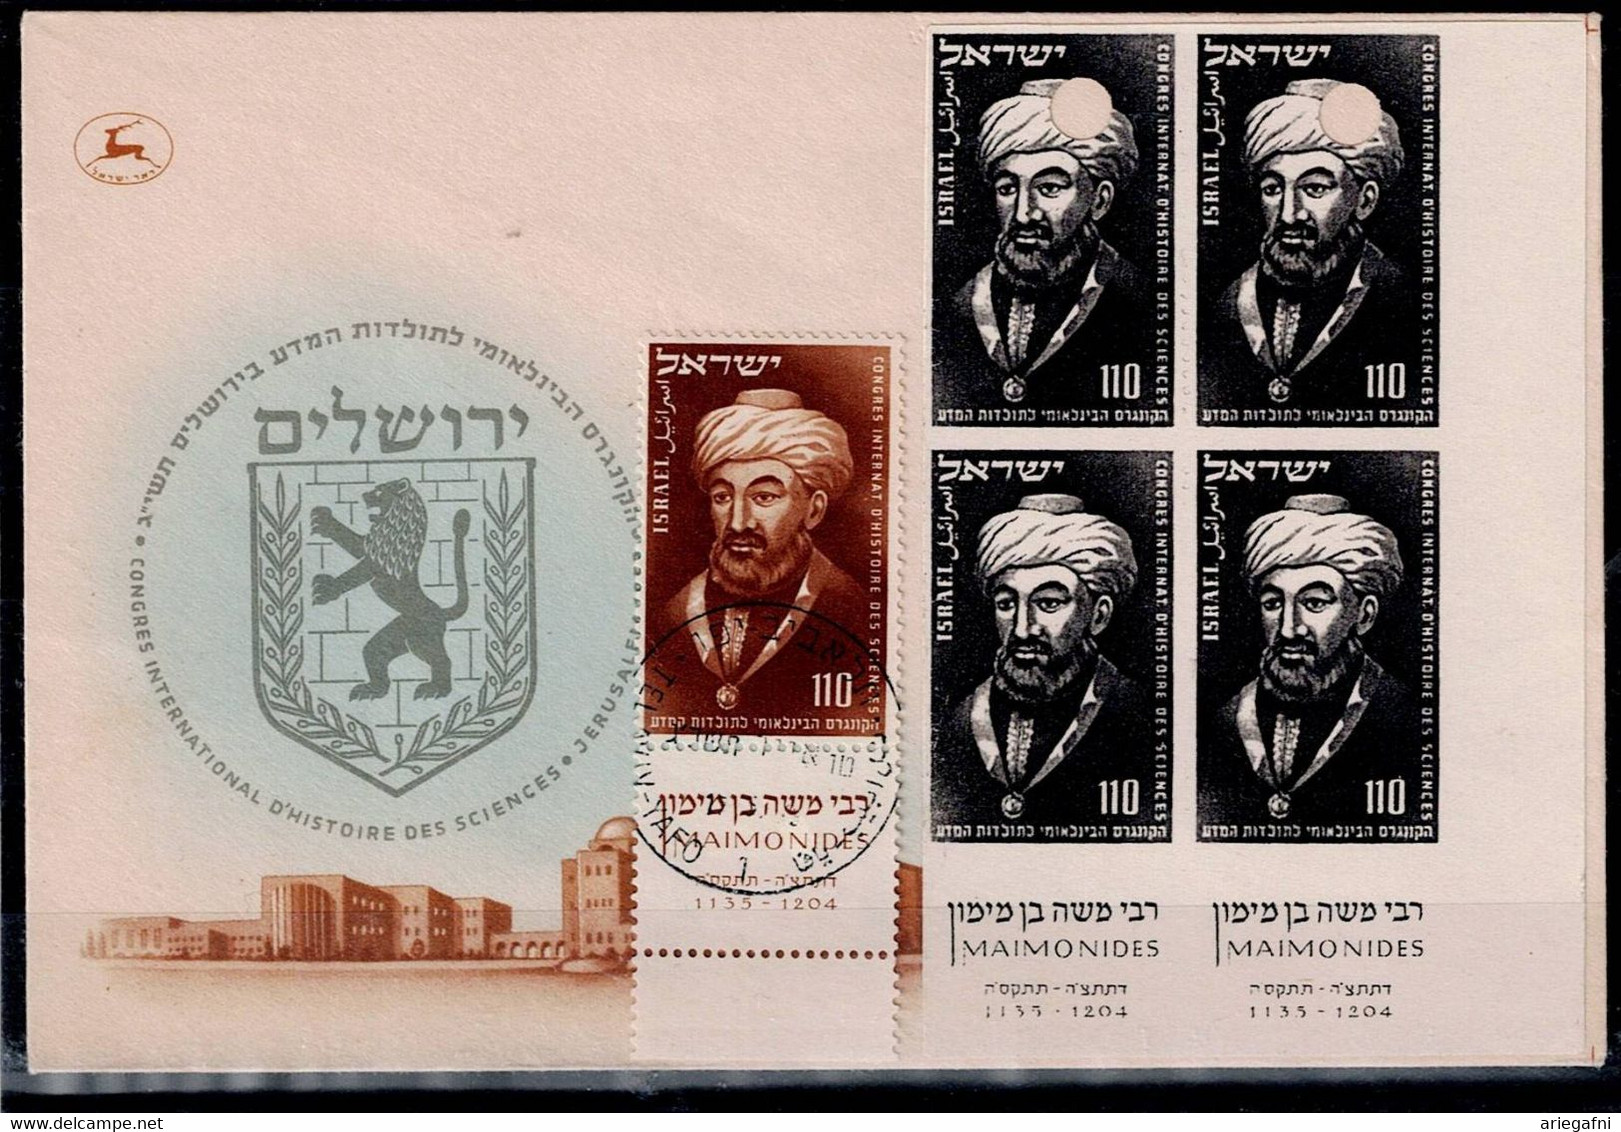 ISRAEL 1953 FDC RAMBAM TAB BLOCK PROOF VF!! - Sin Dentar, Pruebas De Impresión Y Variedades